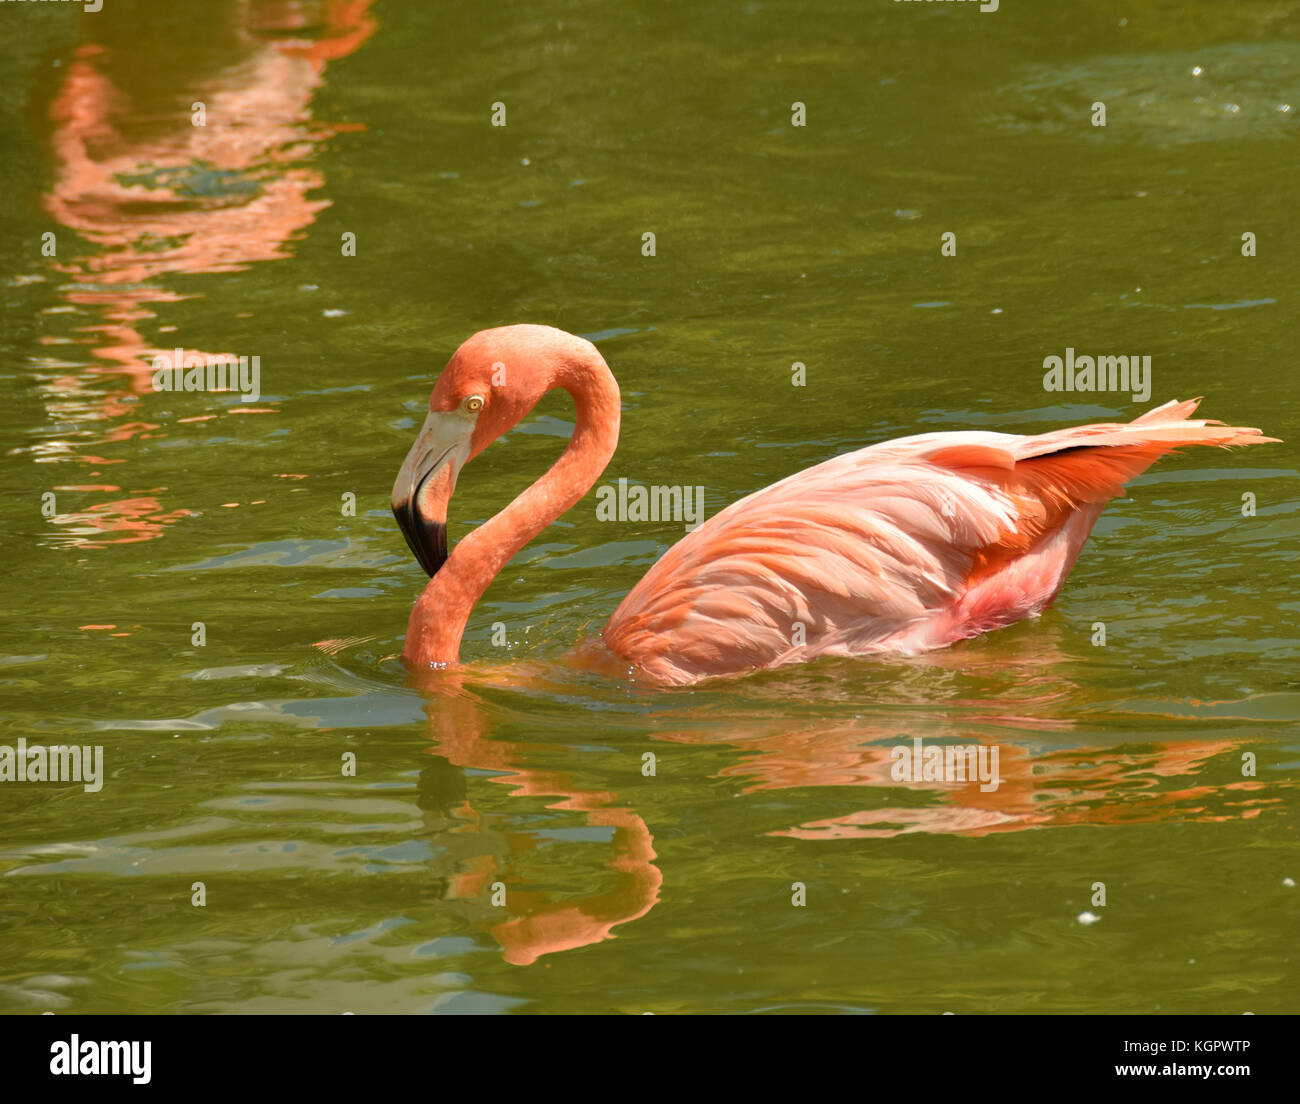 Flamingo schwimmen in einem Florida Teich Stockfotografie - Alamy